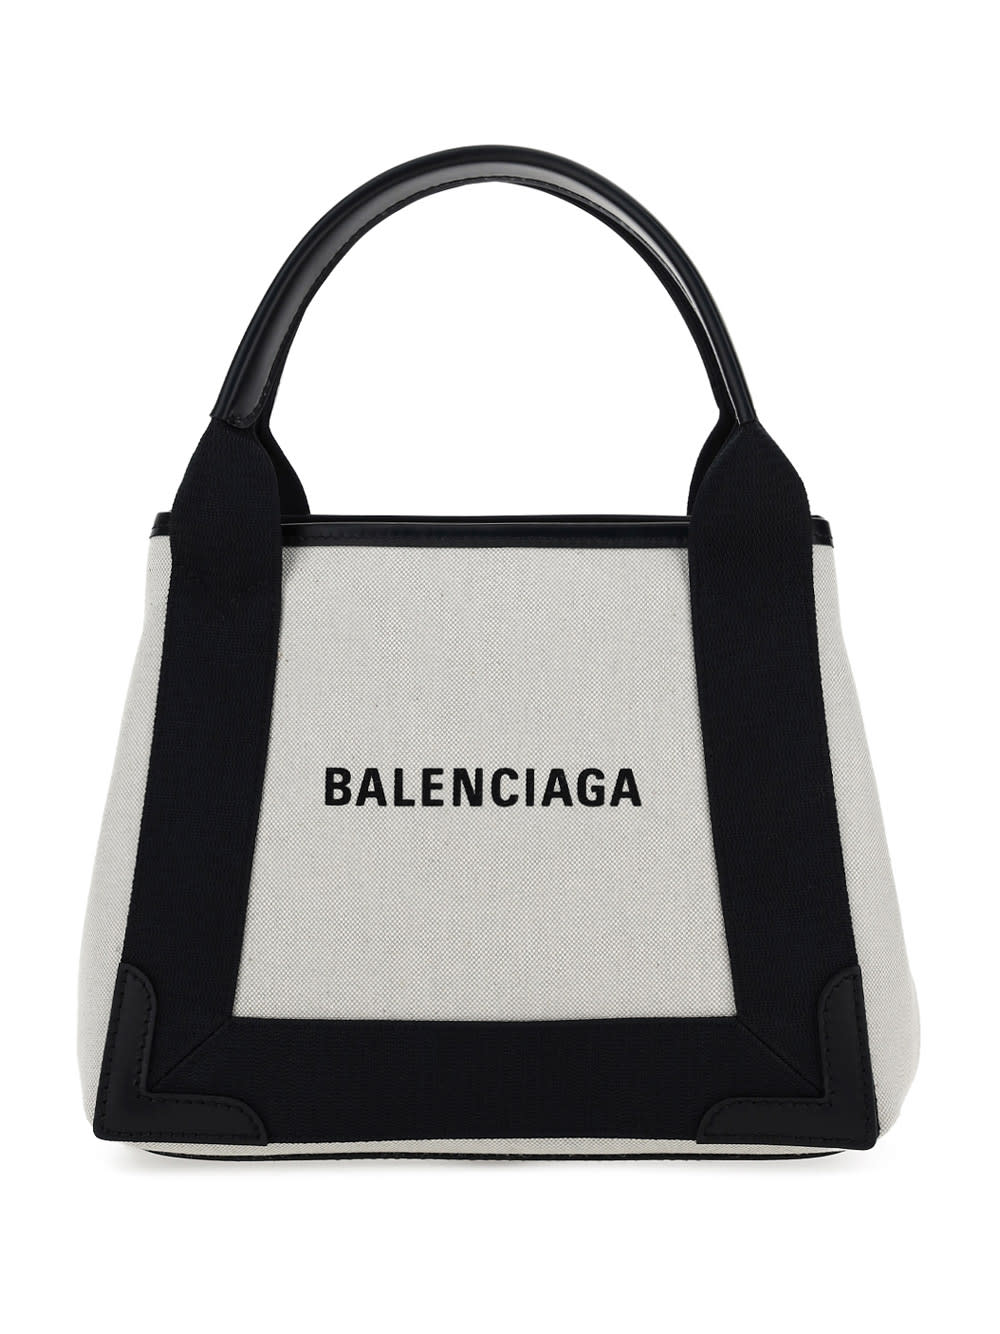 Balenciaga Cabas Handbag